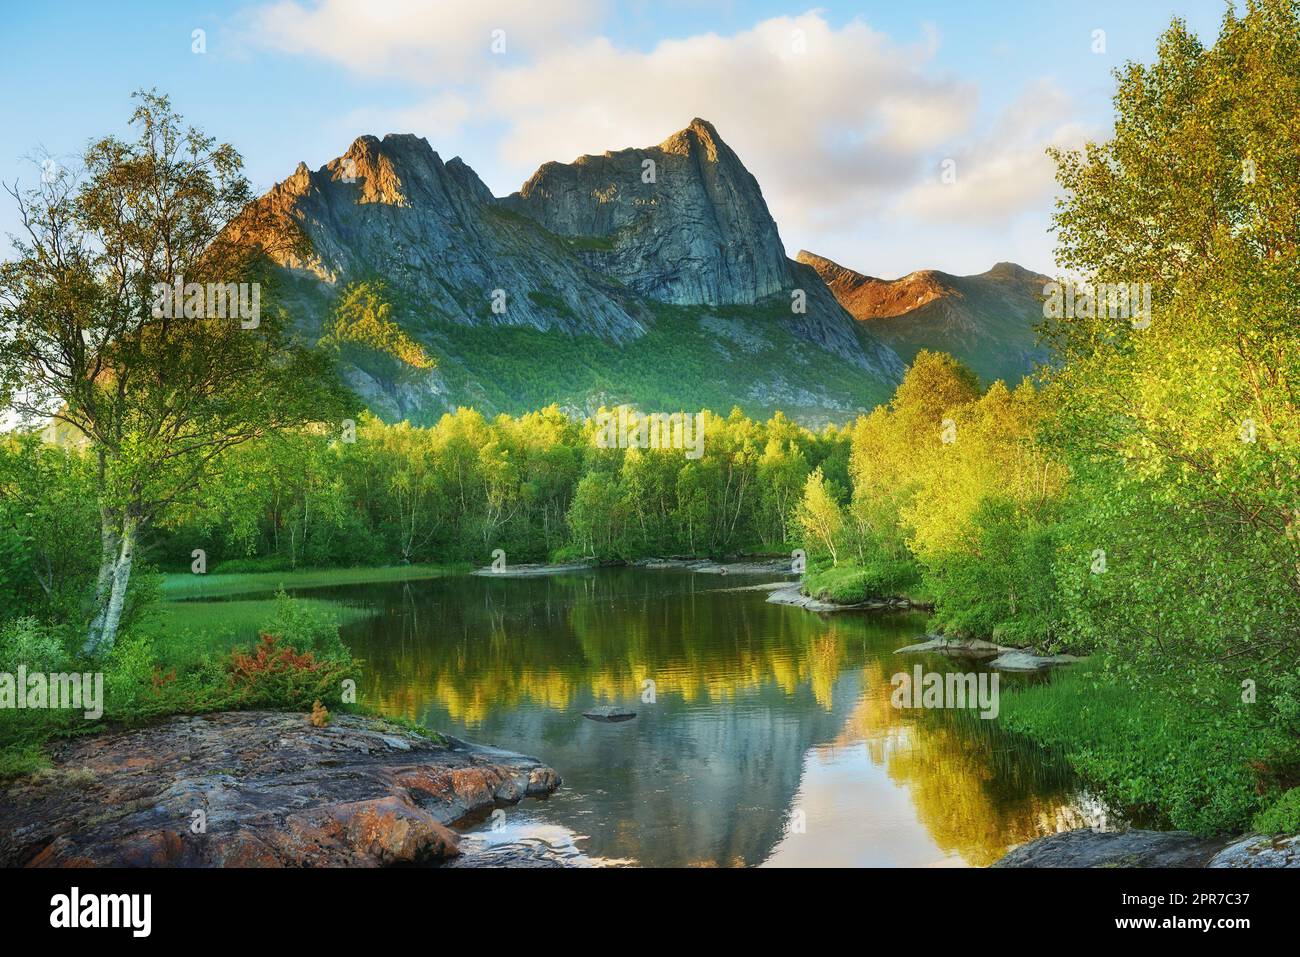 Paesaggio forestale naturale della montagna Nordland sullo sfondo con un lago tranquillo e tranquillo circondato da una foresta verde durante il tramonto. Riflesso del cielo estivo nell'acqua e lussureggiante vegetazione verde Foto Stock